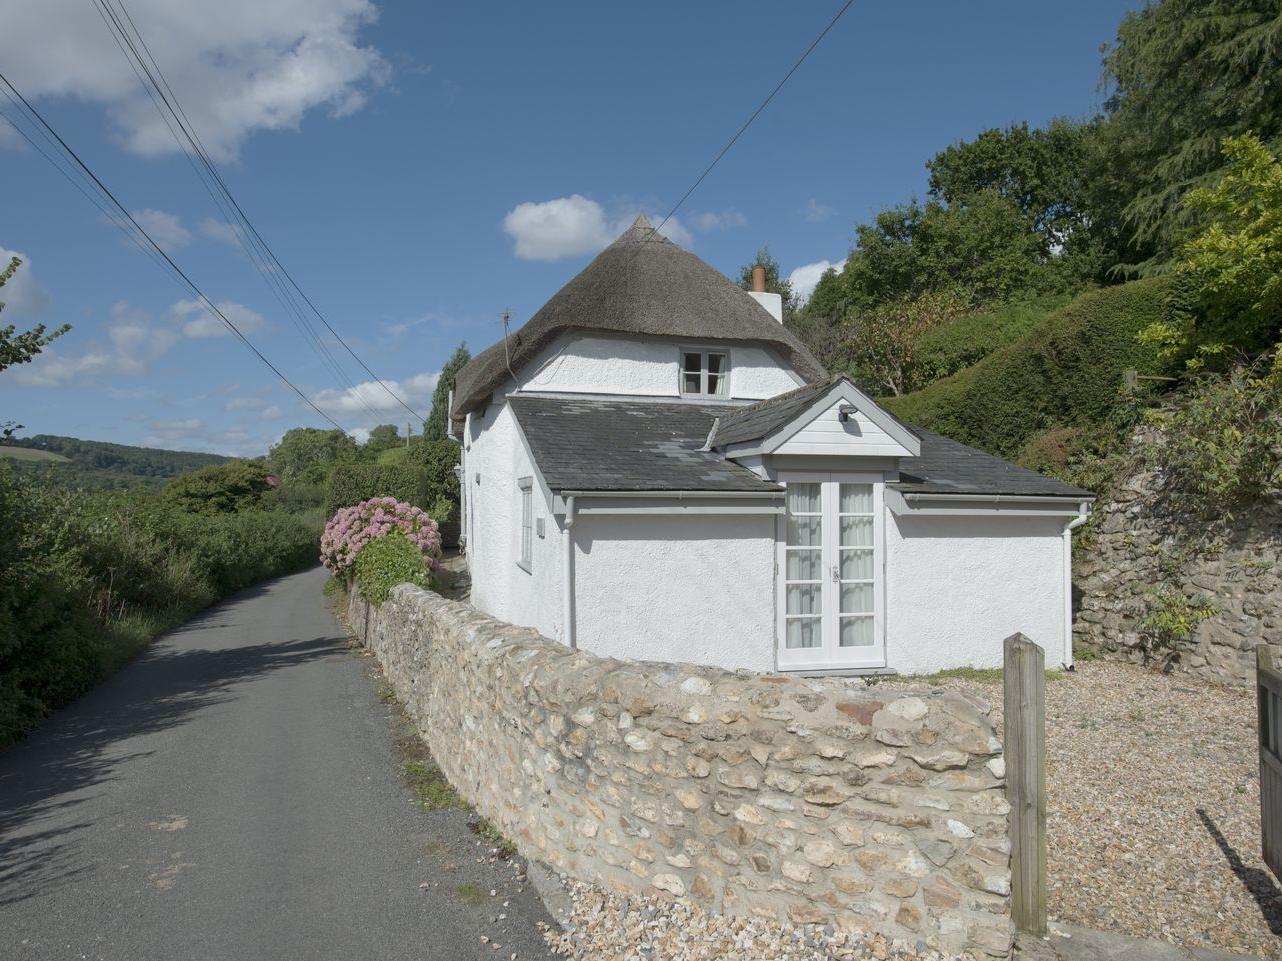 Marlborough Cottage